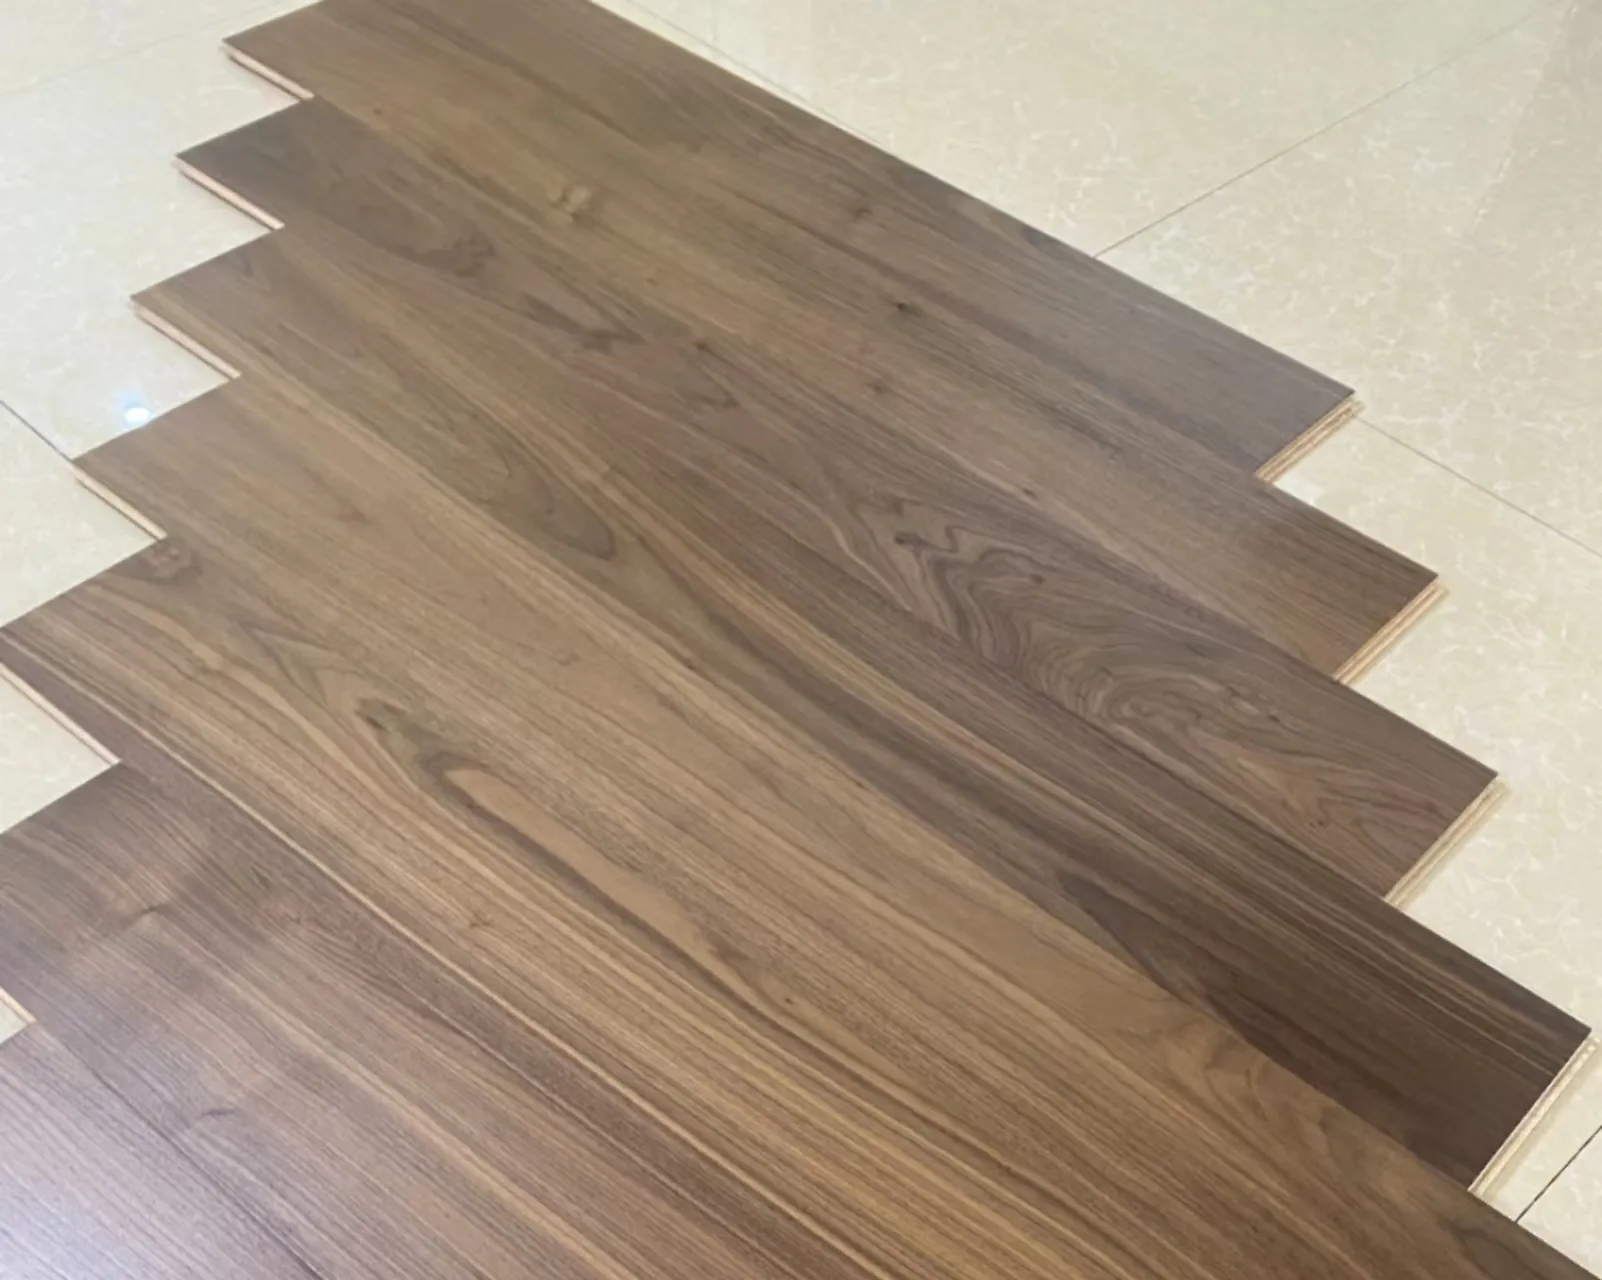 Superficie lisa de madera de estilo retro Color marrón impermeable de nogal americano de ingeniería multicapa con diseño especial de alta calidad